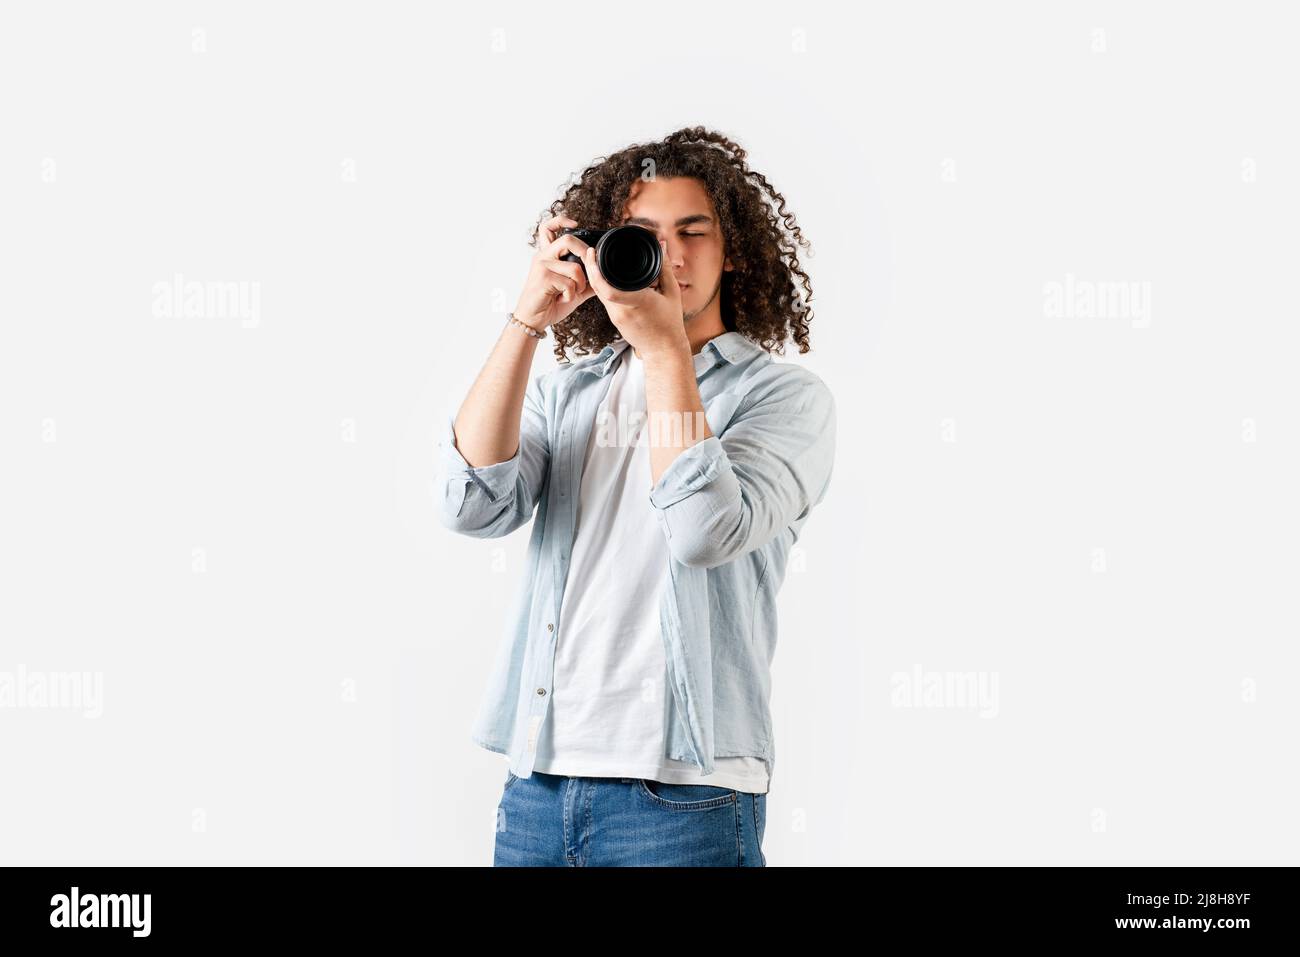 Il giovane uomo con capelli ricci sta scattando con la fotocamera in mano. Concetto di hobby e fotografia. Foto di alta qualità Foto Stock